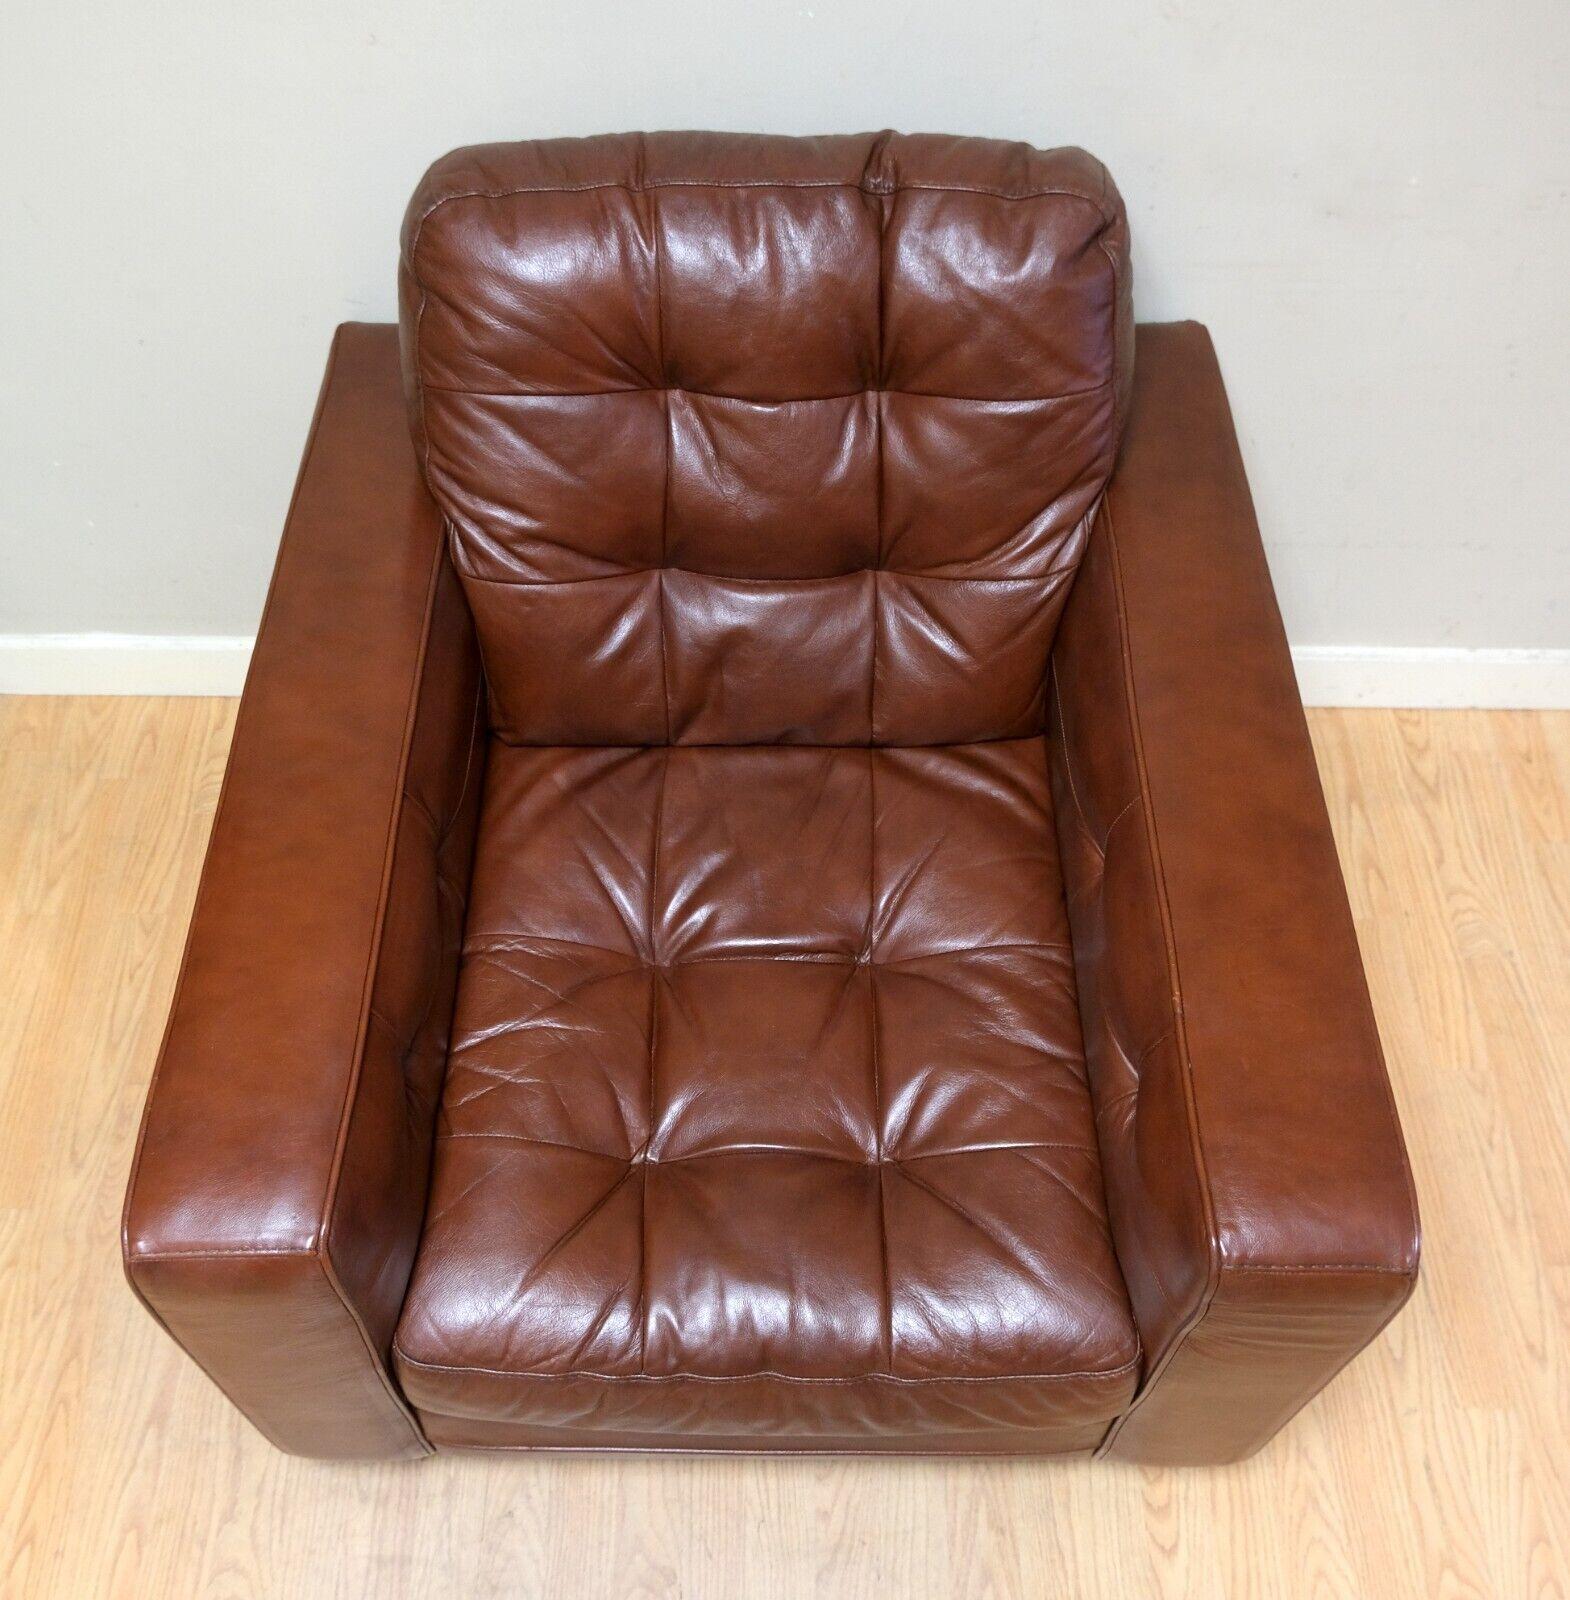 Nous sommes ravis de proposer à la vente ce joli fauteuil en cuir marron de style Knoll avec des boutons de style chesterfield. 

Cette pièce est belle et super confortable, tout se complète avec le cuir souple. Le style Knoll permet d'ajouter du